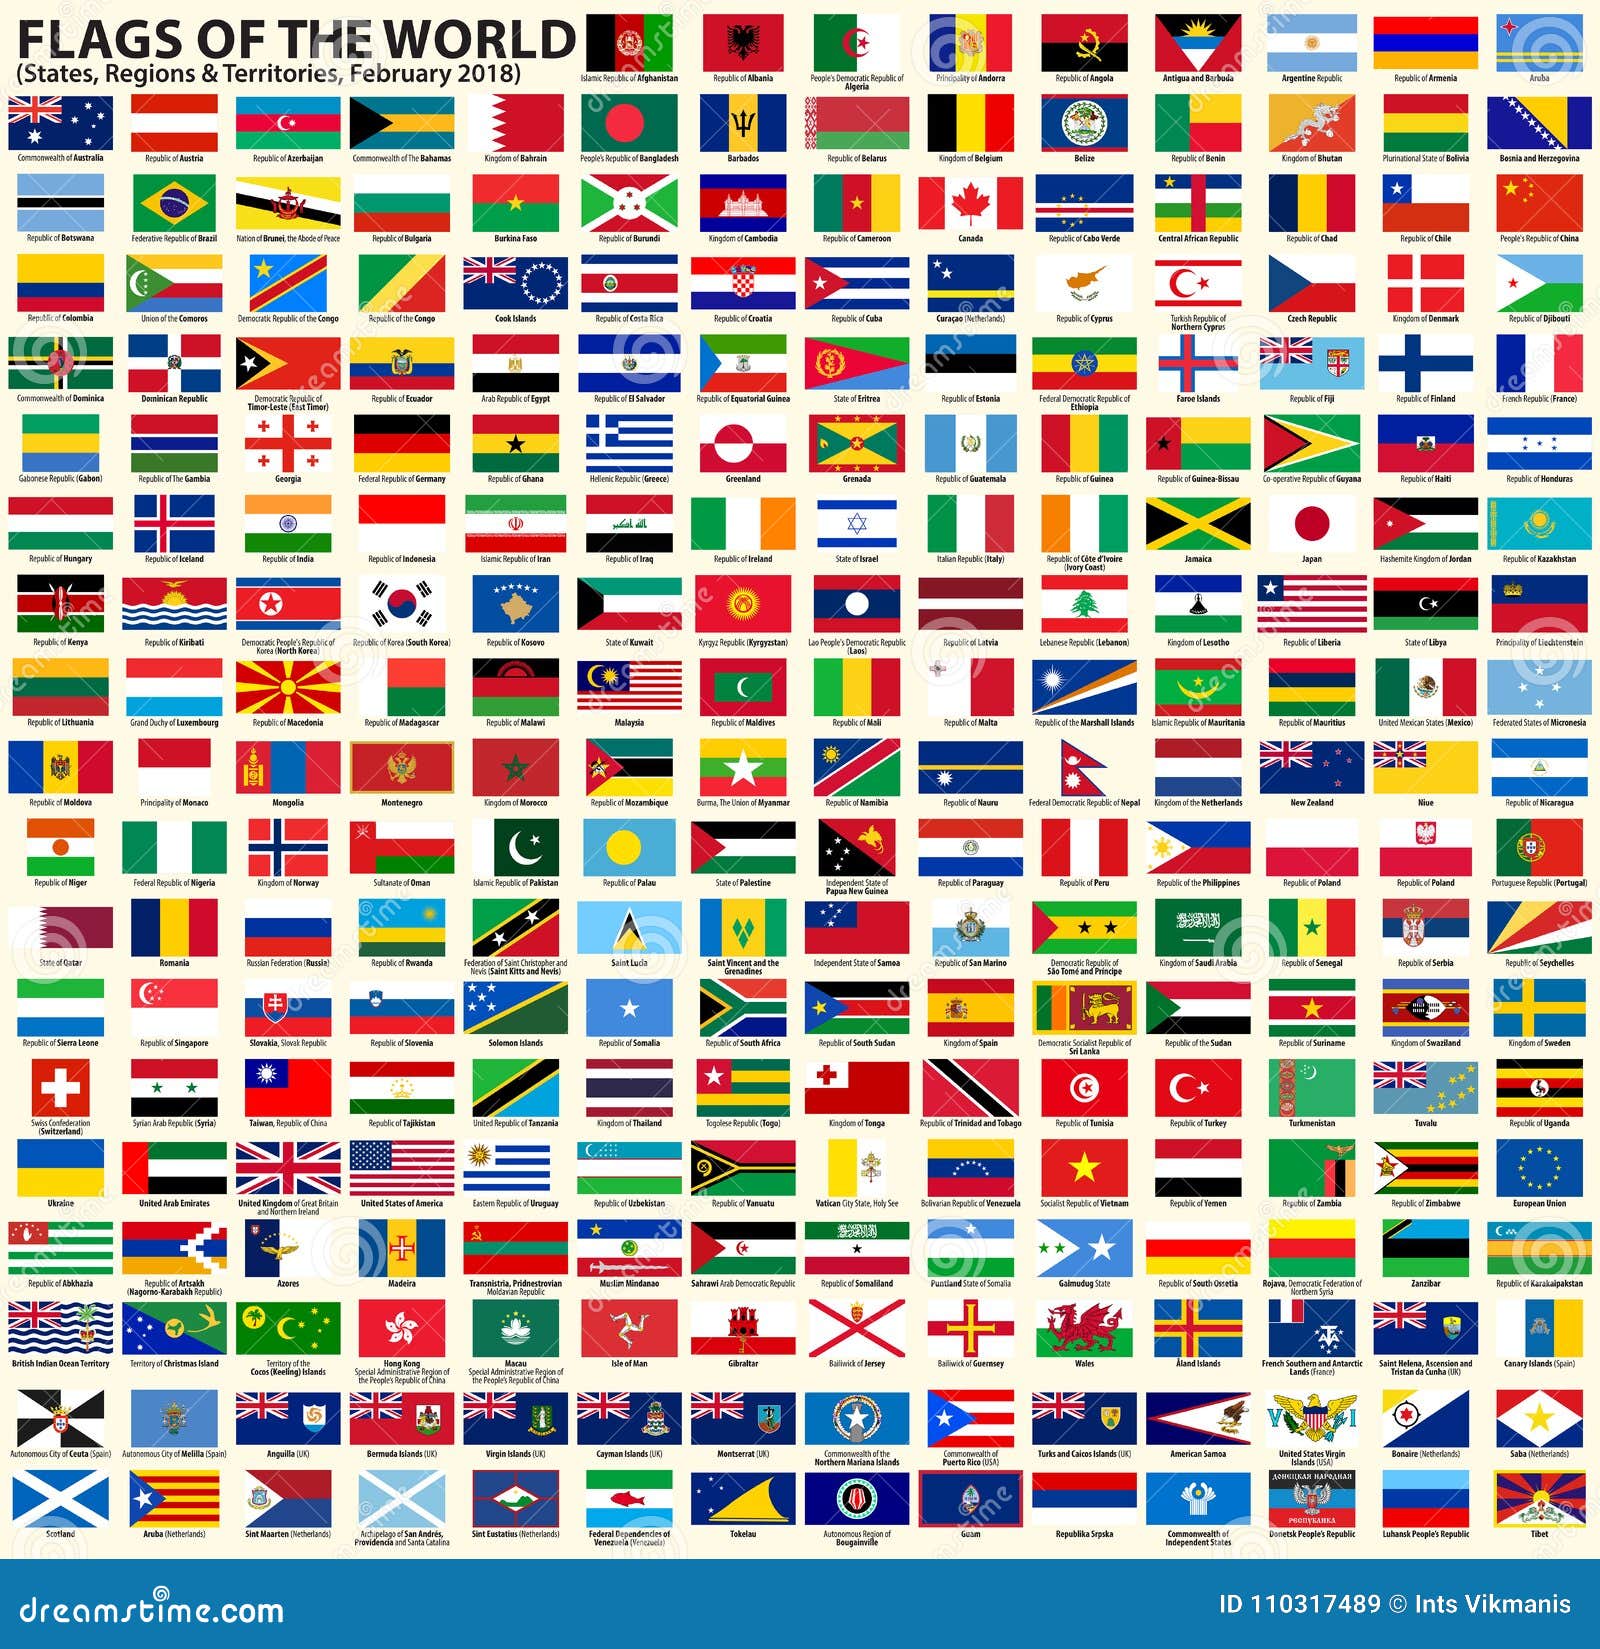 Länder-Fahne Flagge m Ösen 150x90cm • Flaggen der Welt • PHILIPINEN ○80131